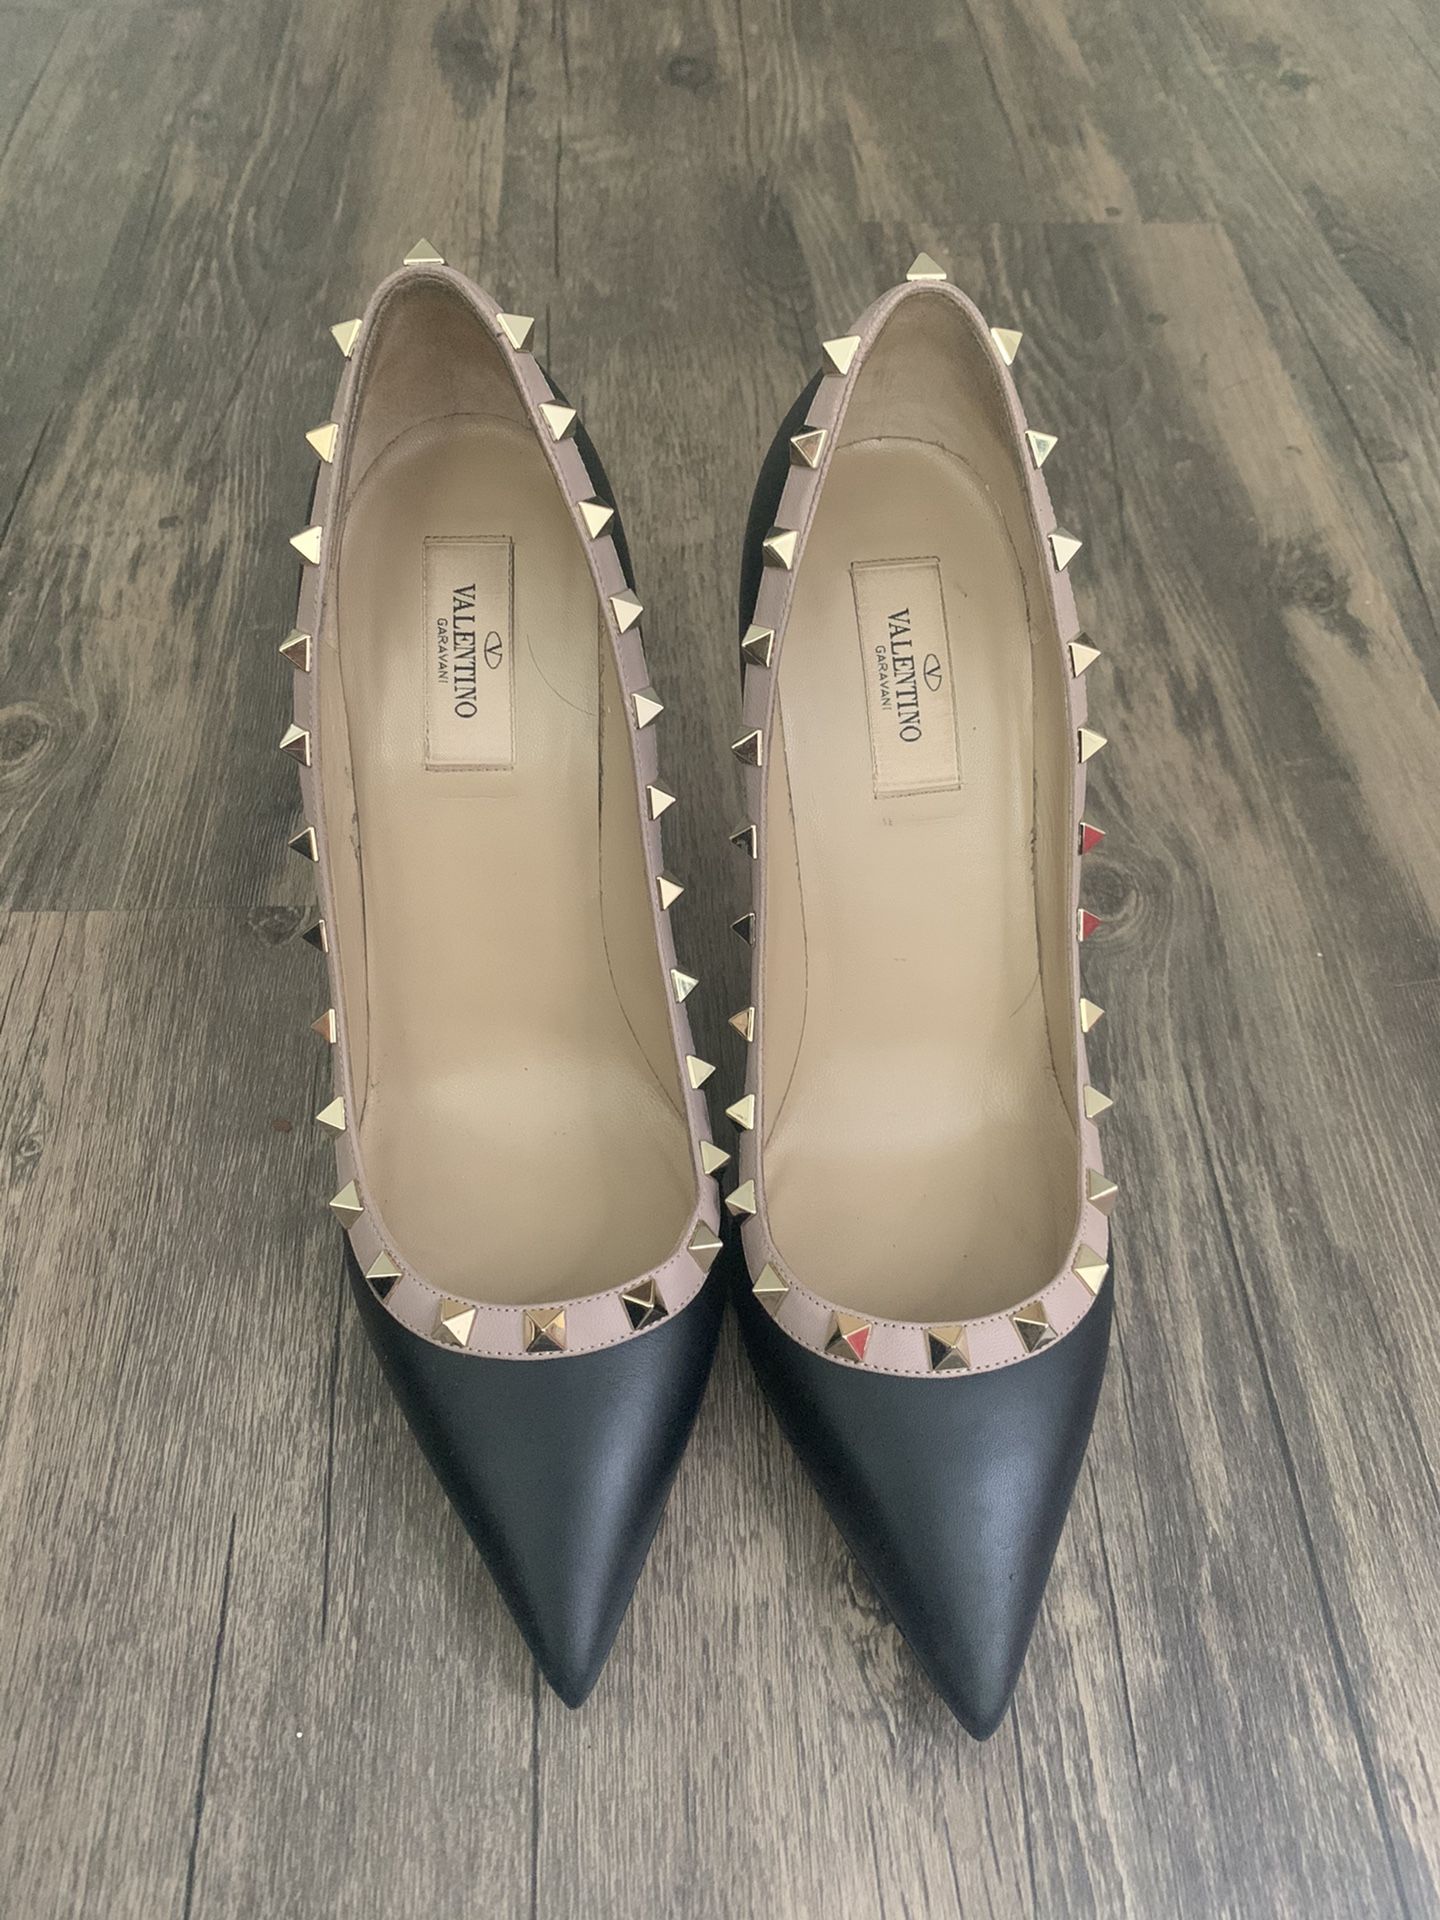 Authentic Valentino heels